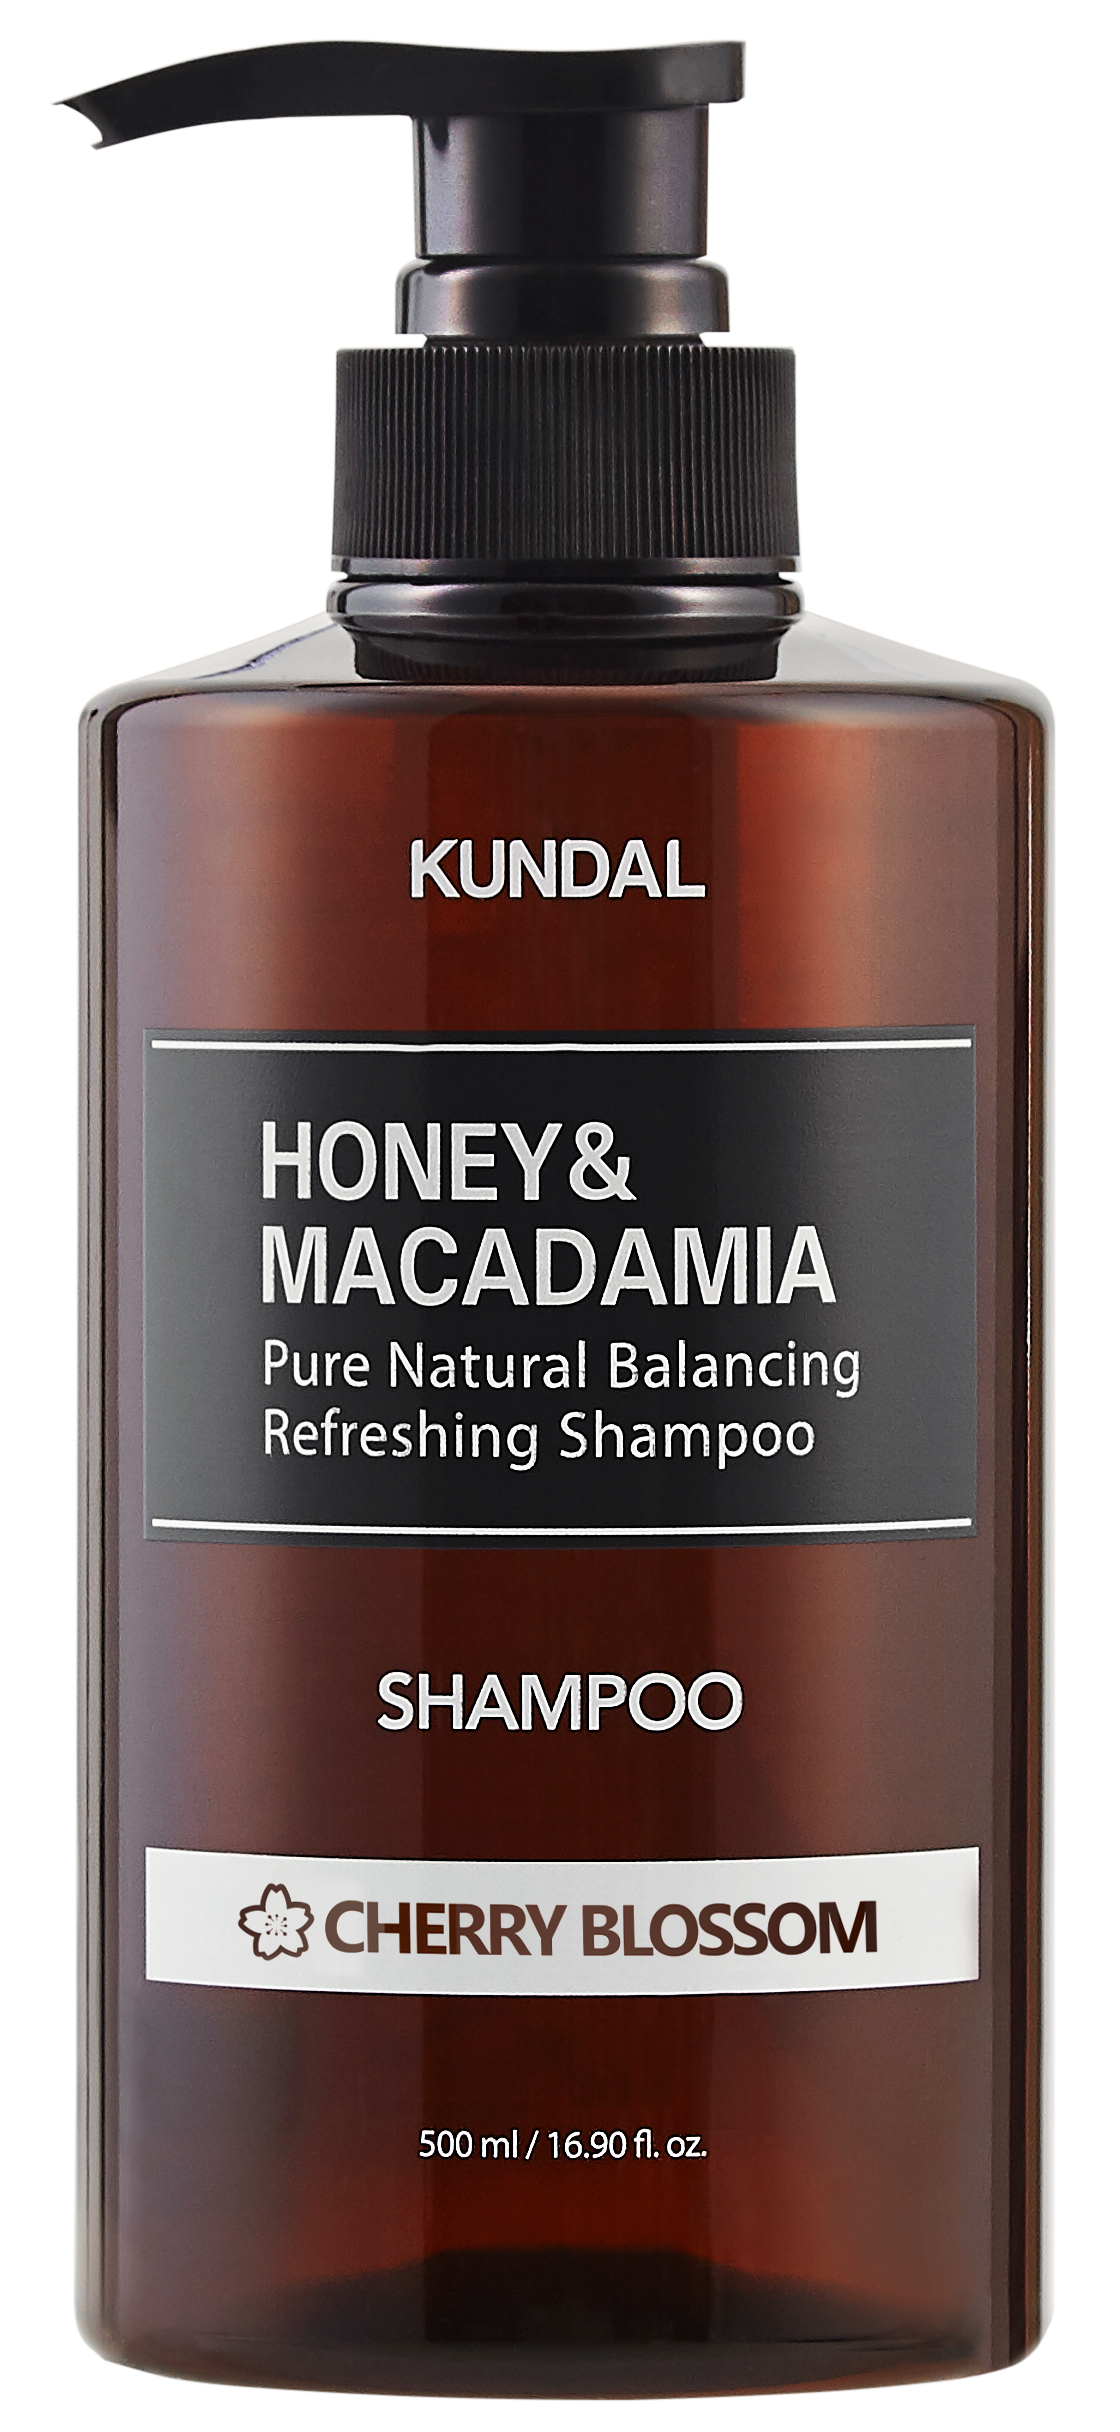 Kundal Honey & Macadamia Cherry Blossom Shampoo